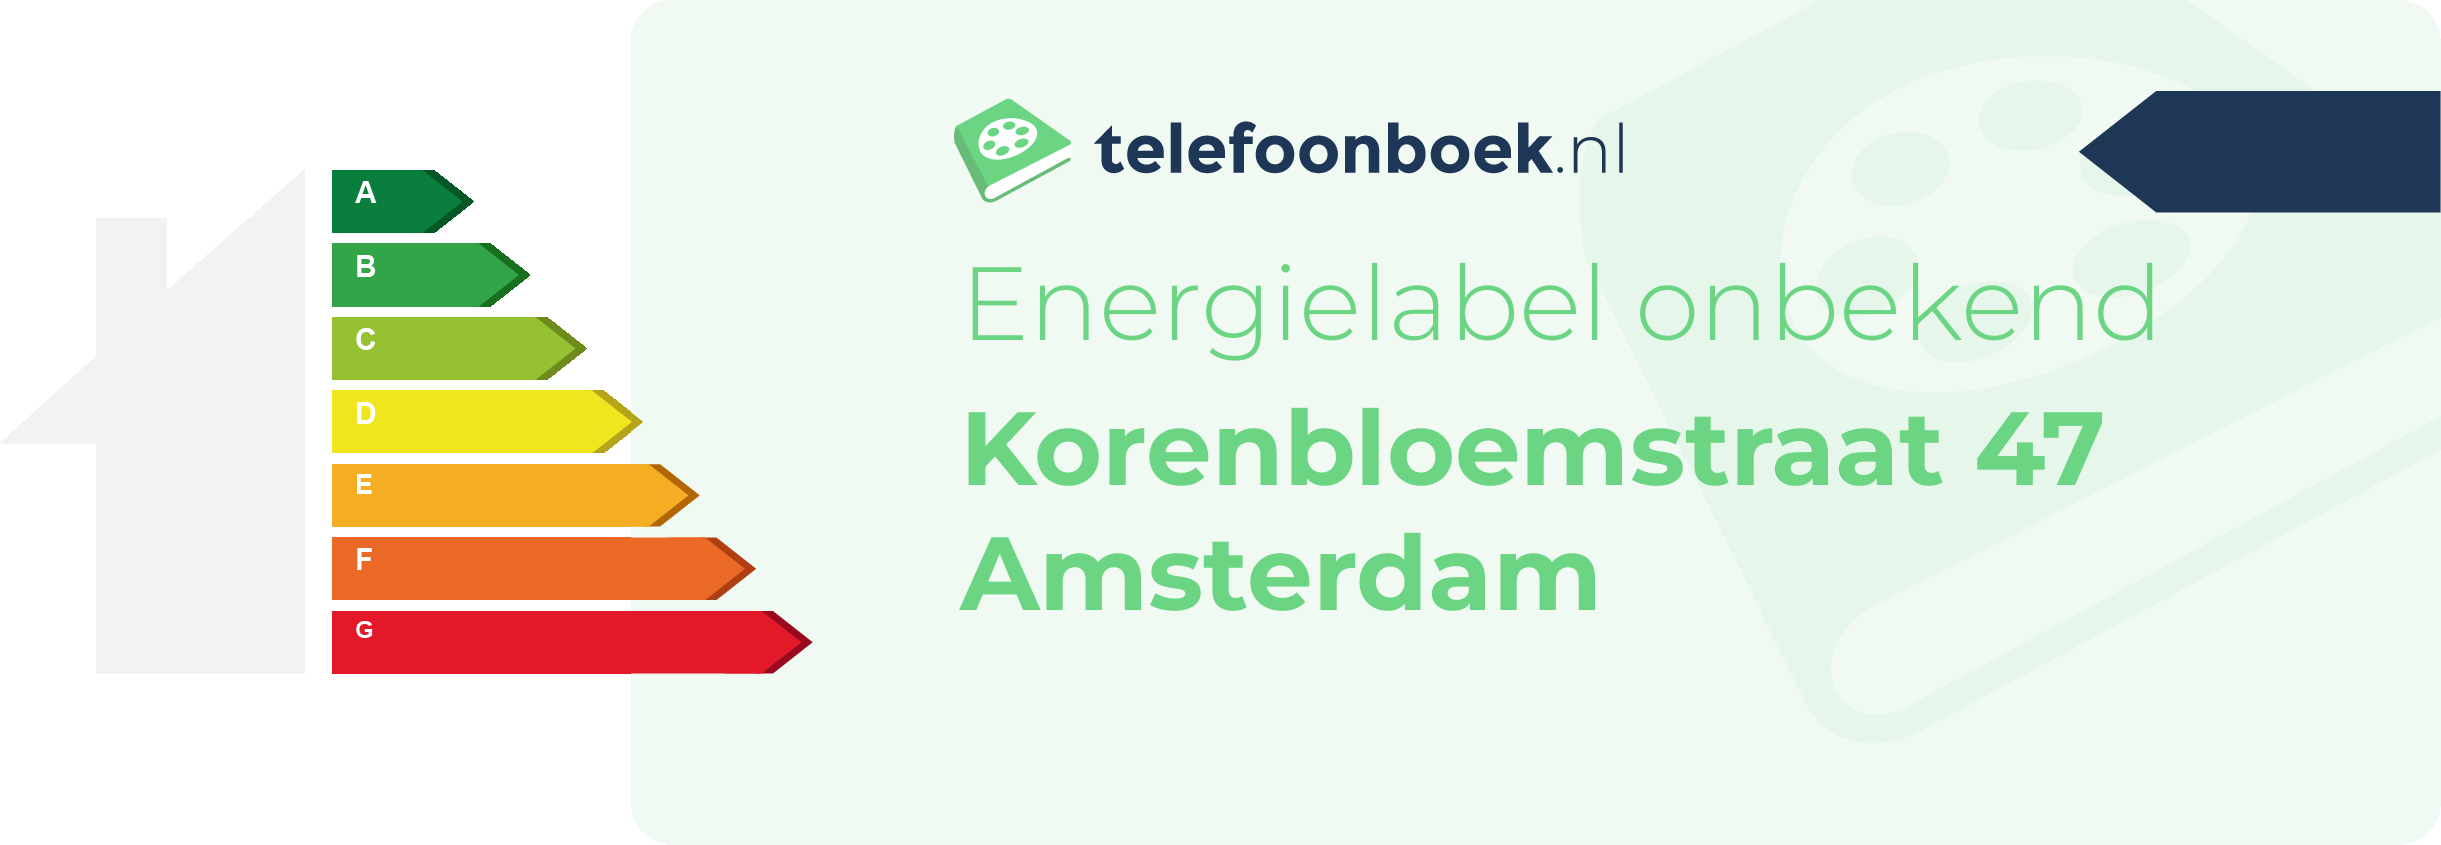 Energielabel Korenbloemstraat 47 Amsterdam